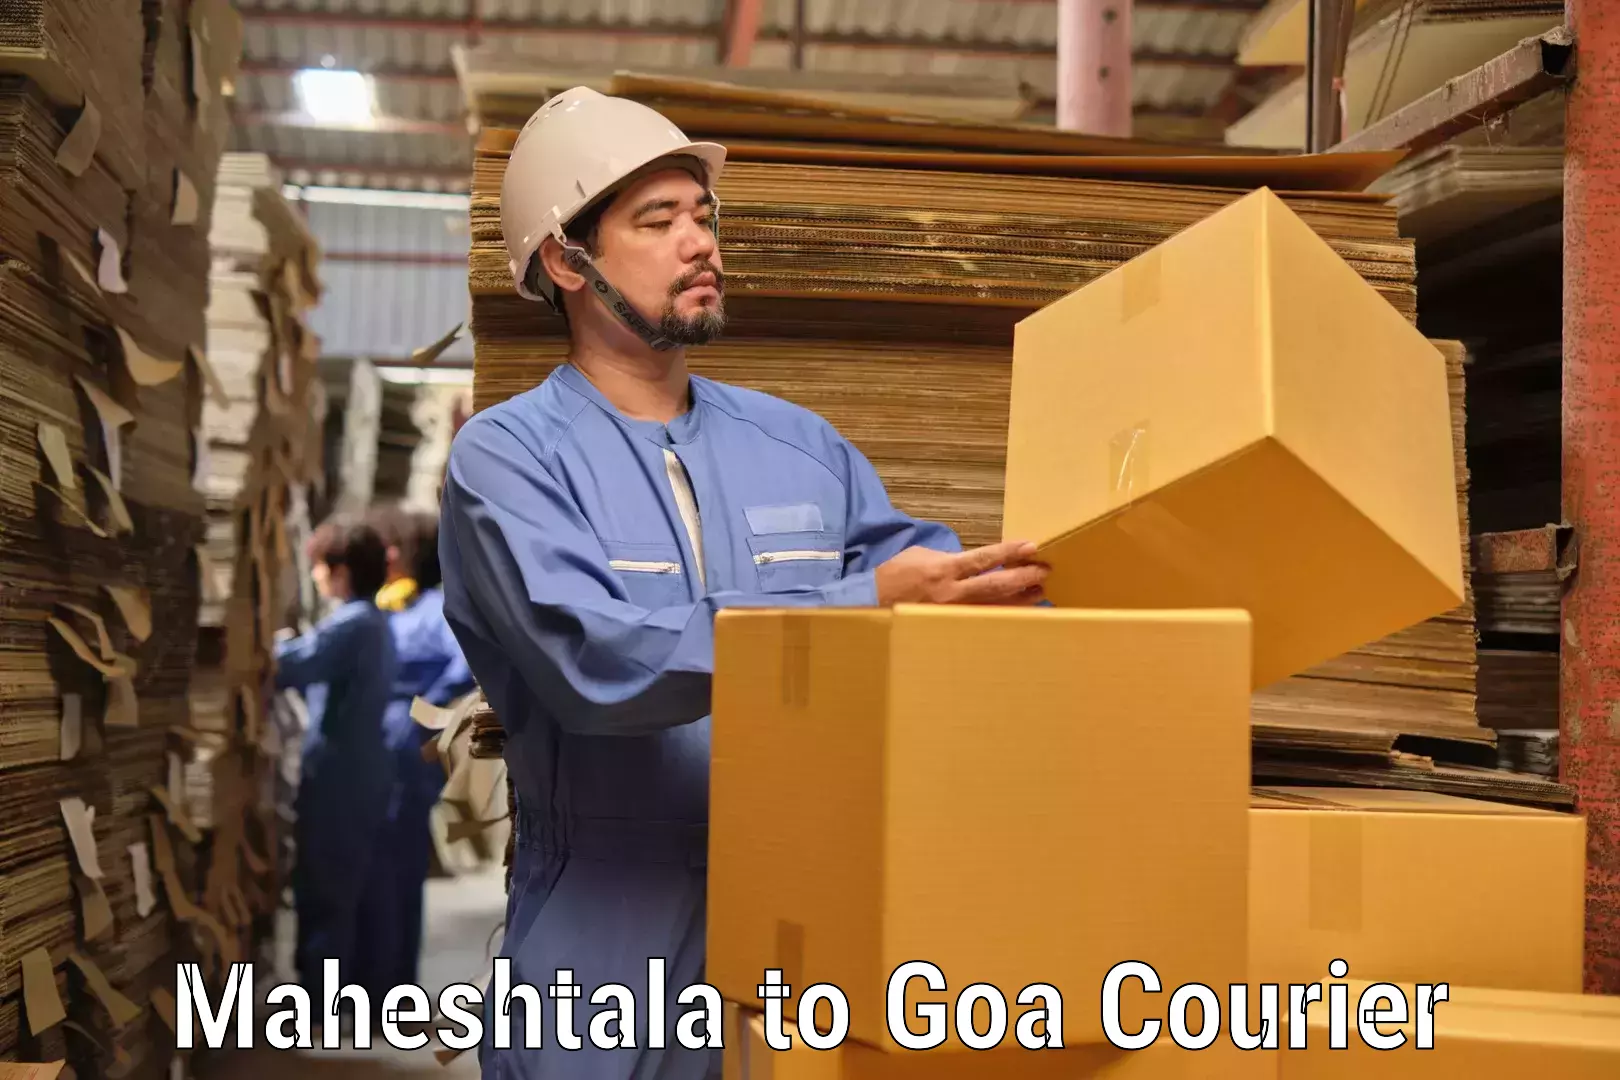 Express delivery capabilities in Maheshtala to Goa